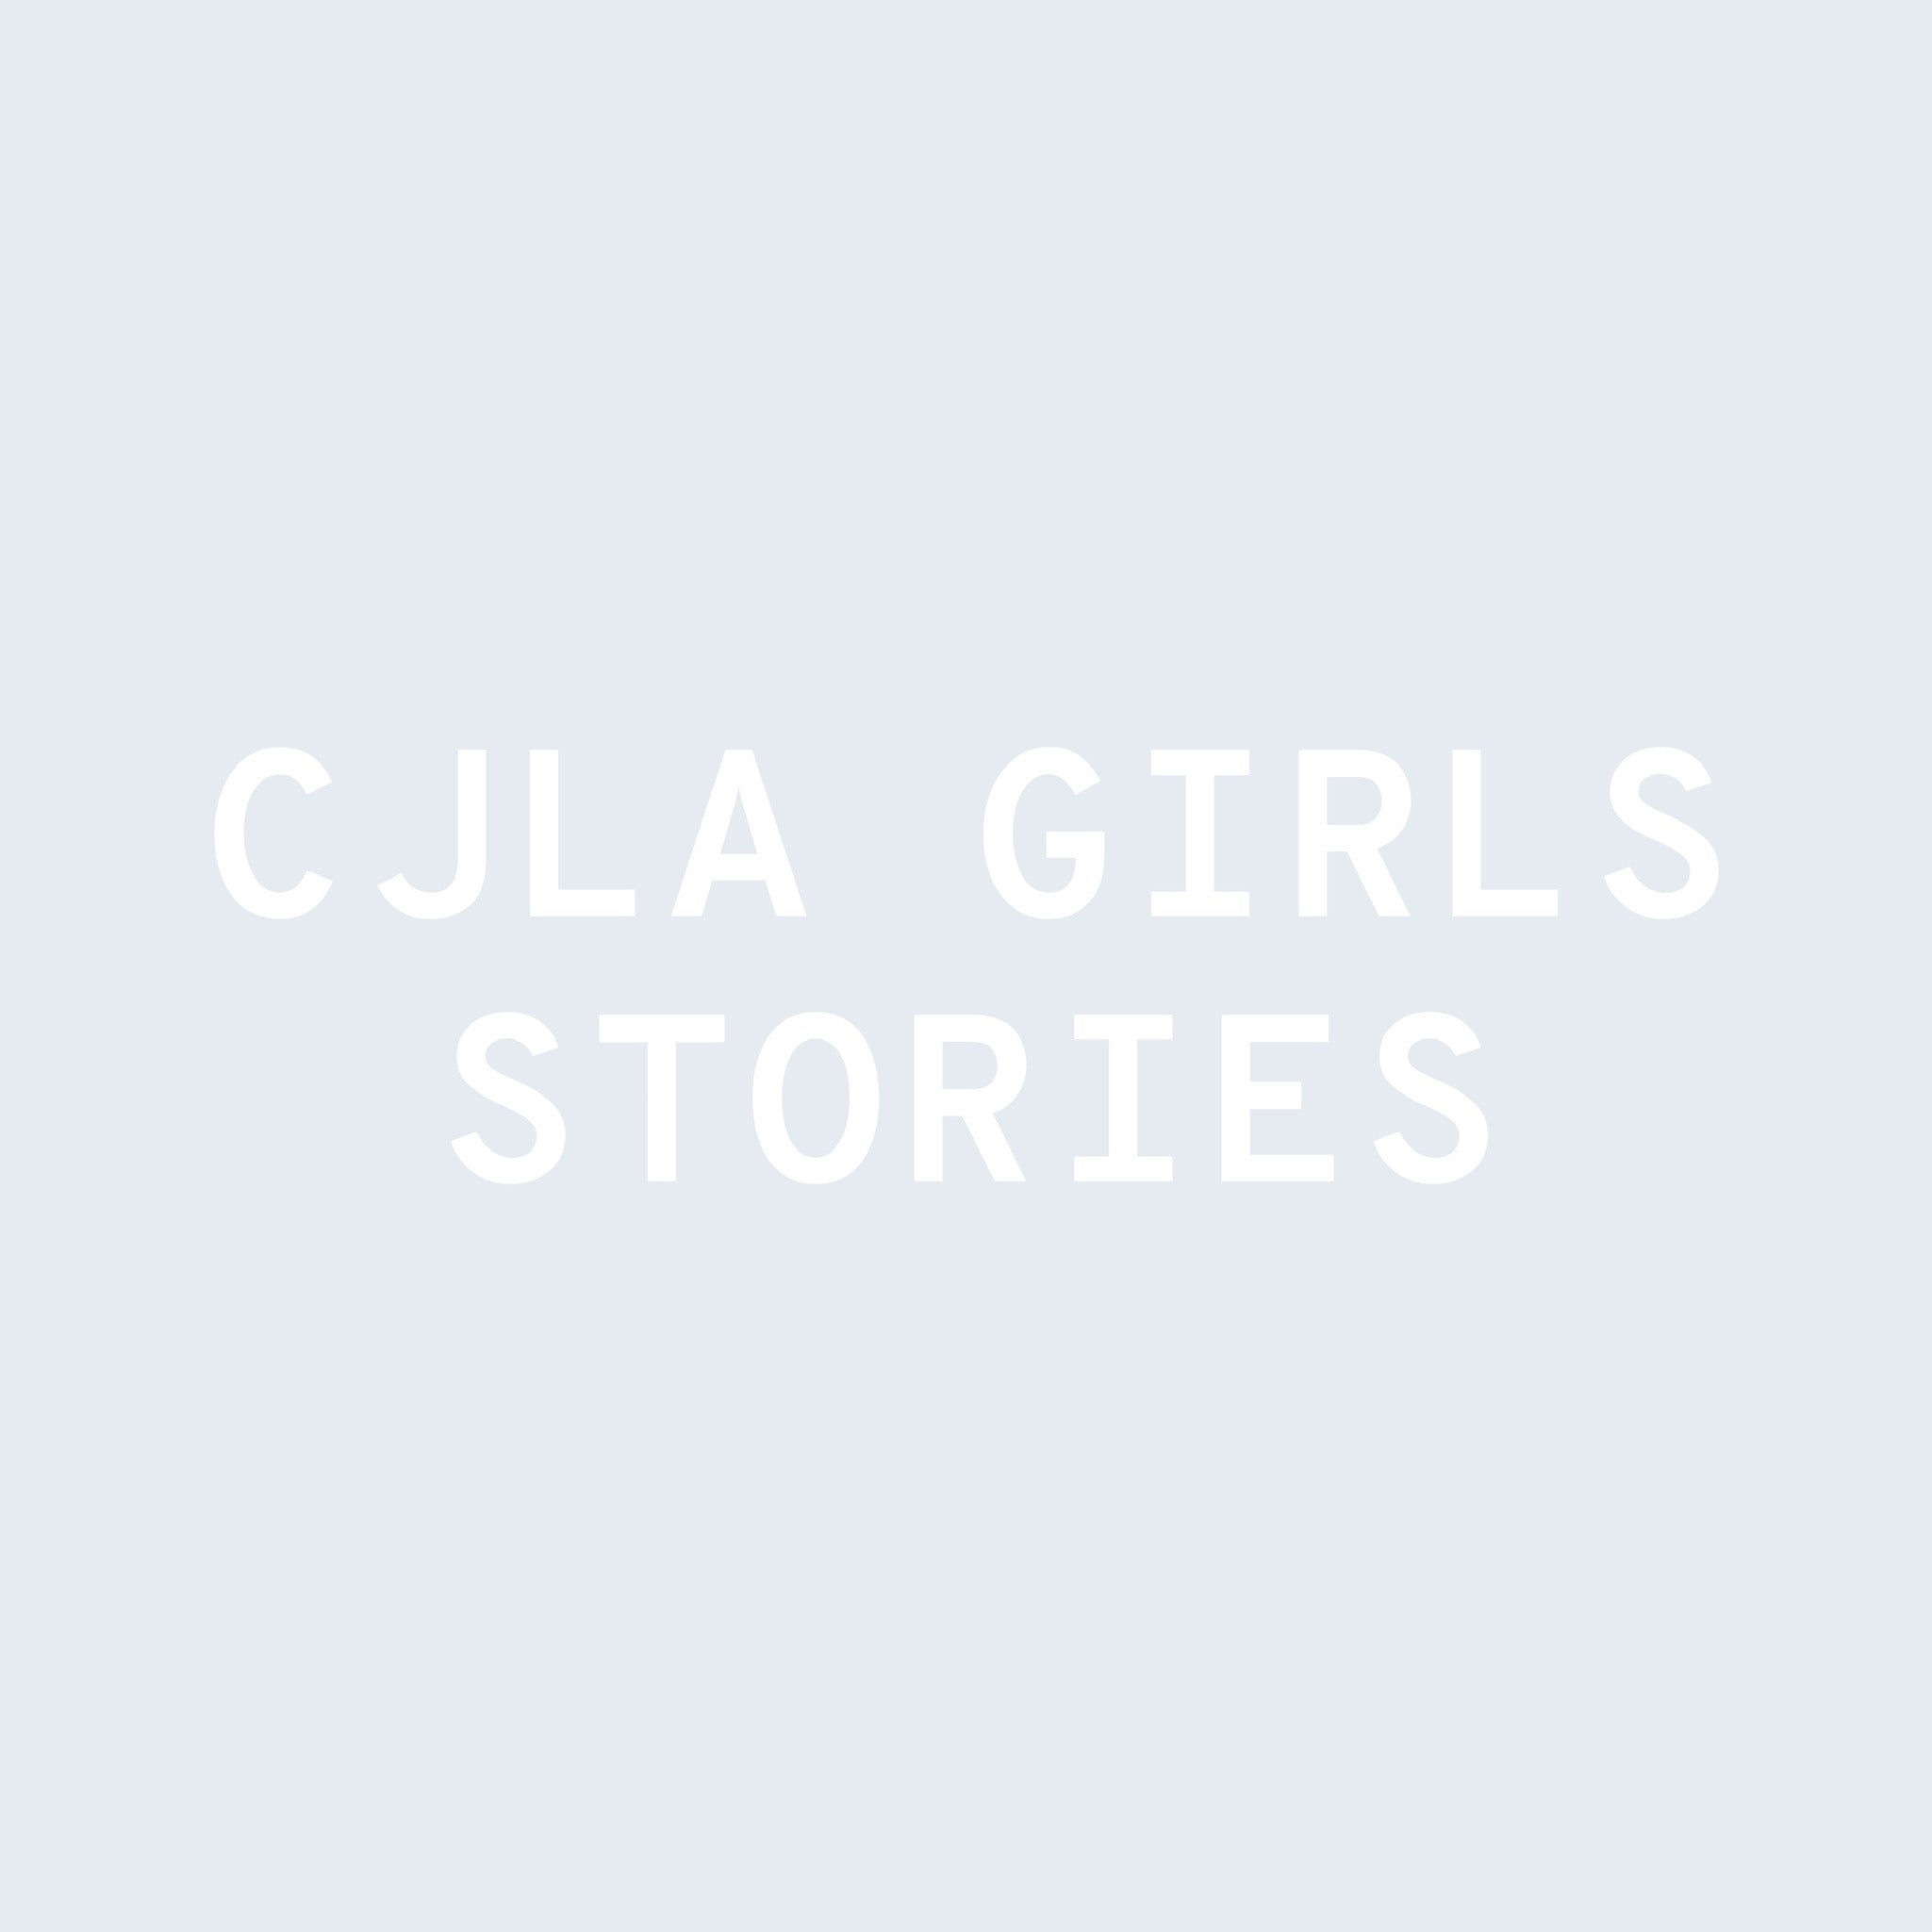 CJLA Girls Stories: Courtney Smith